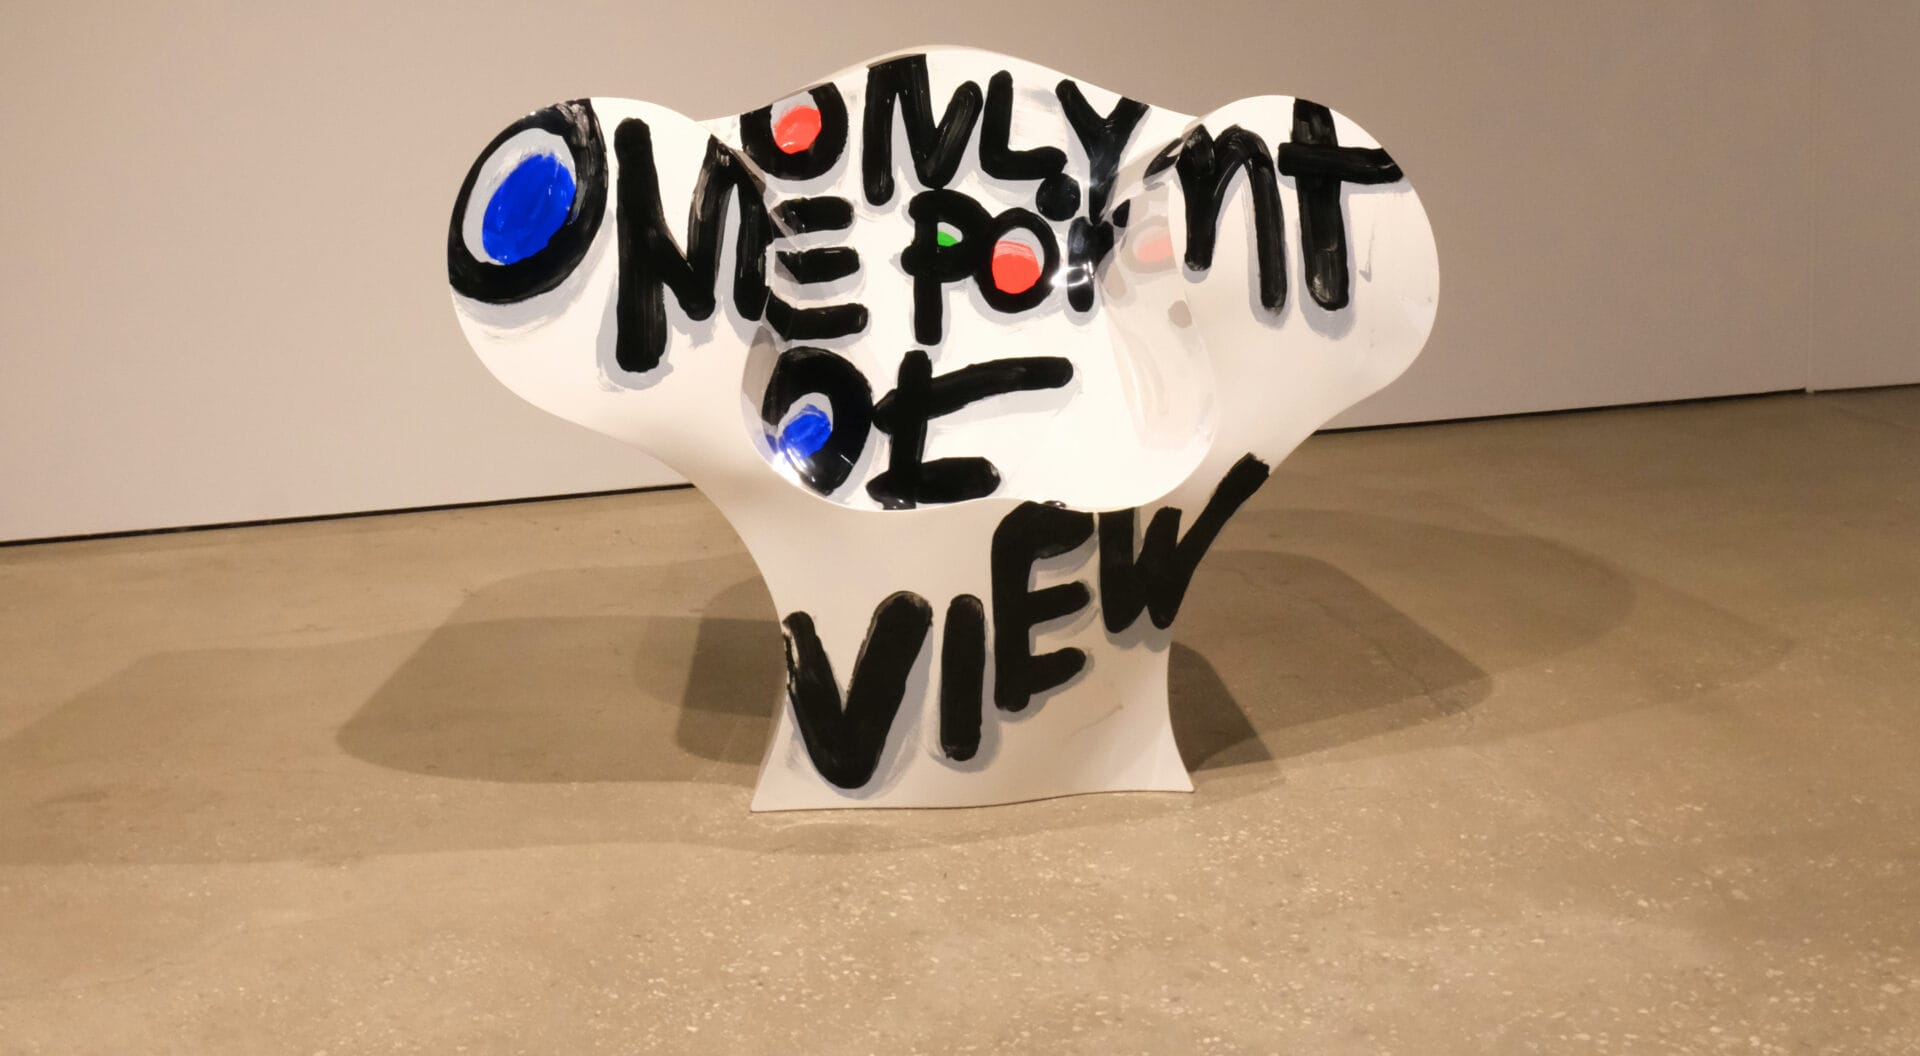 Een witte, kunststof stoel met daarop de graffiti-tekst "Only one point of view"